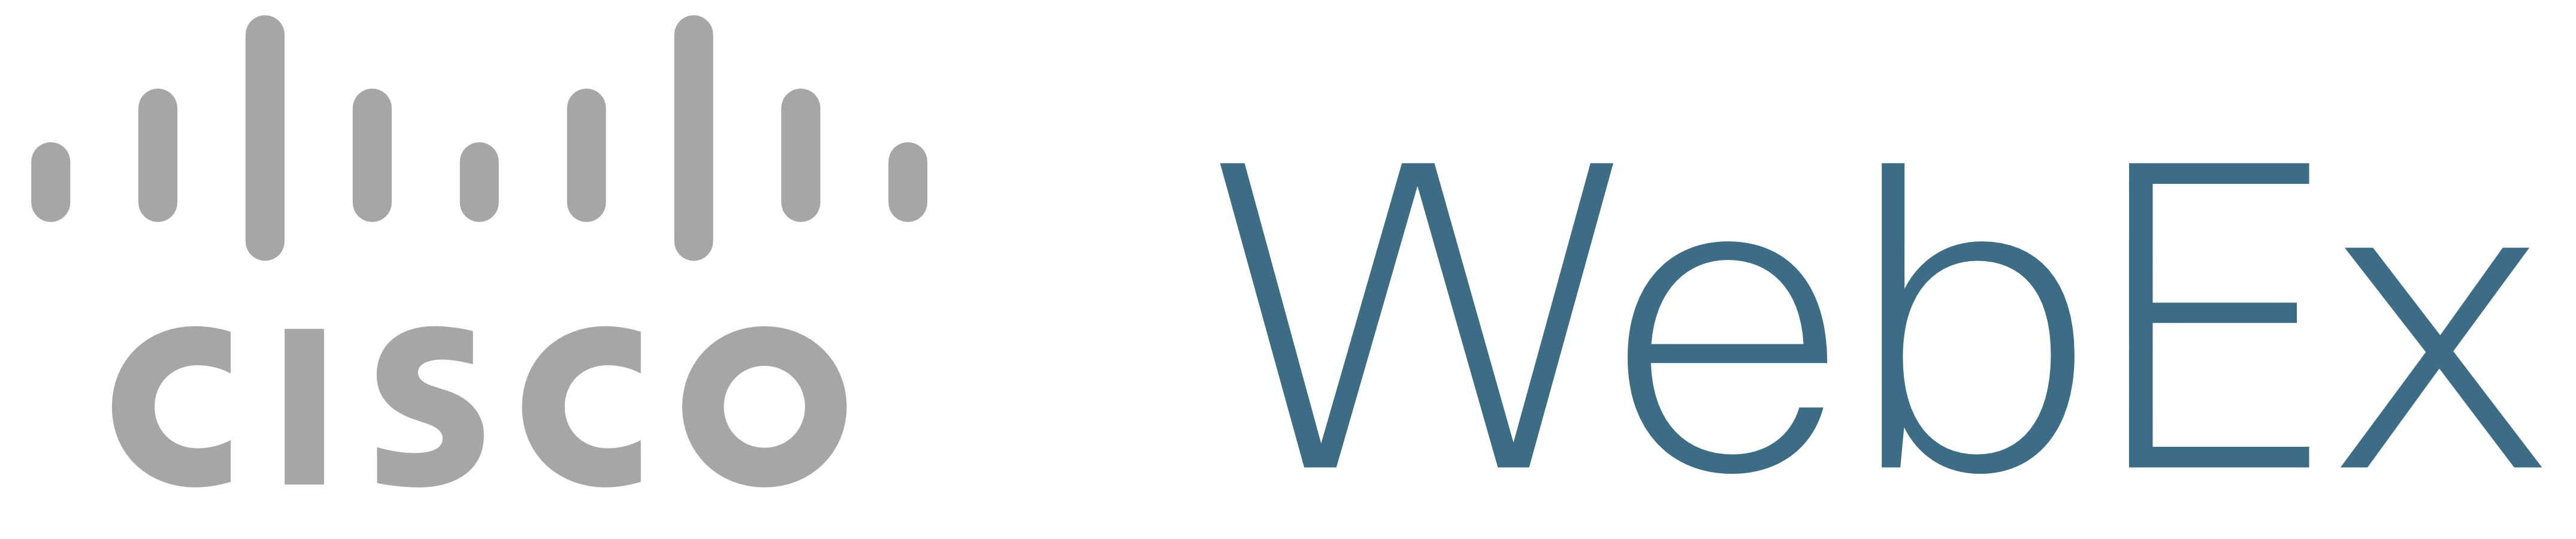 Cisco Webex logo, logotype